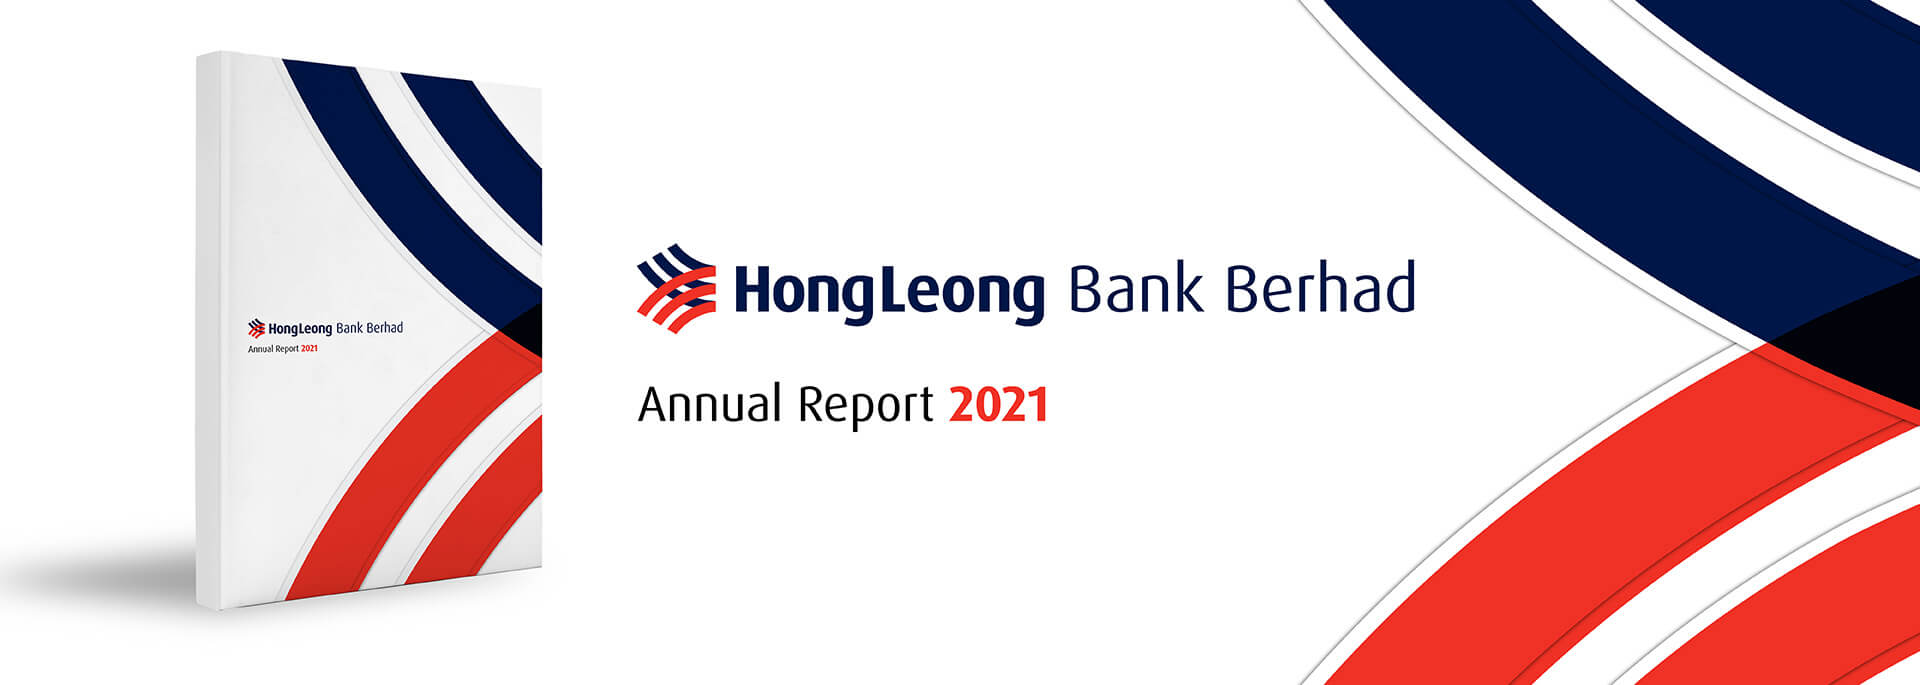 Hong leong bank share price